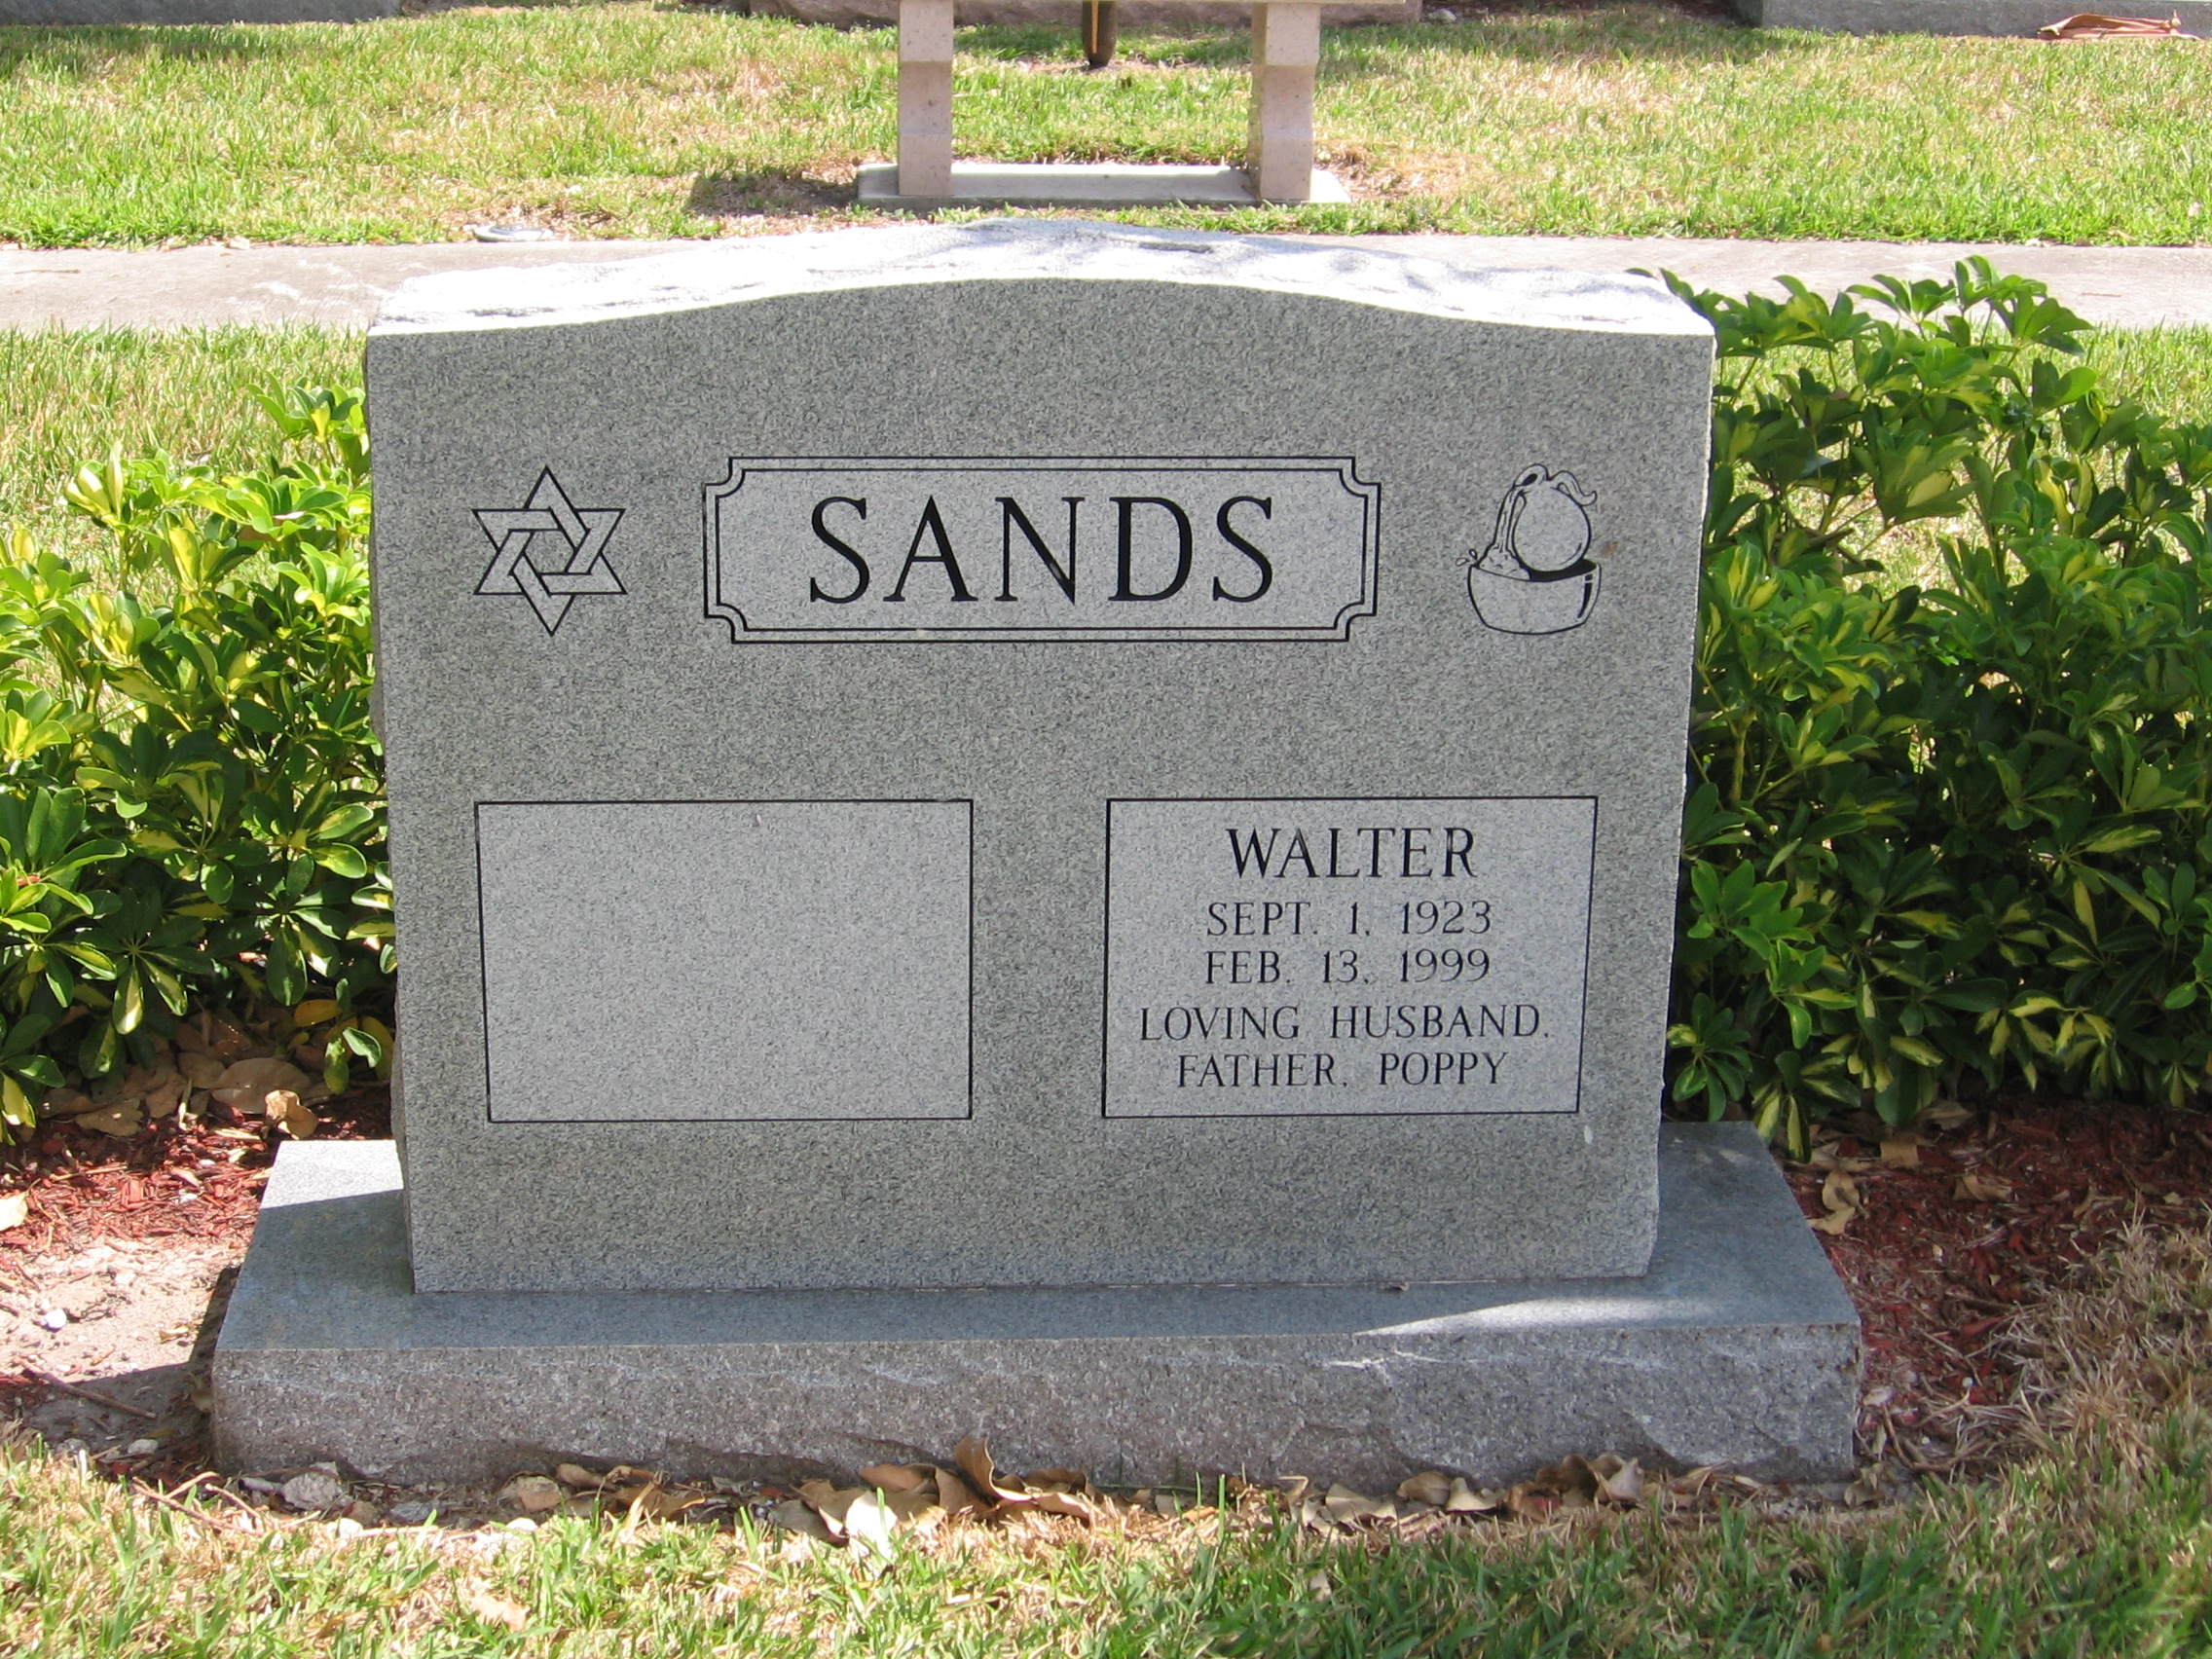 Walter Sands